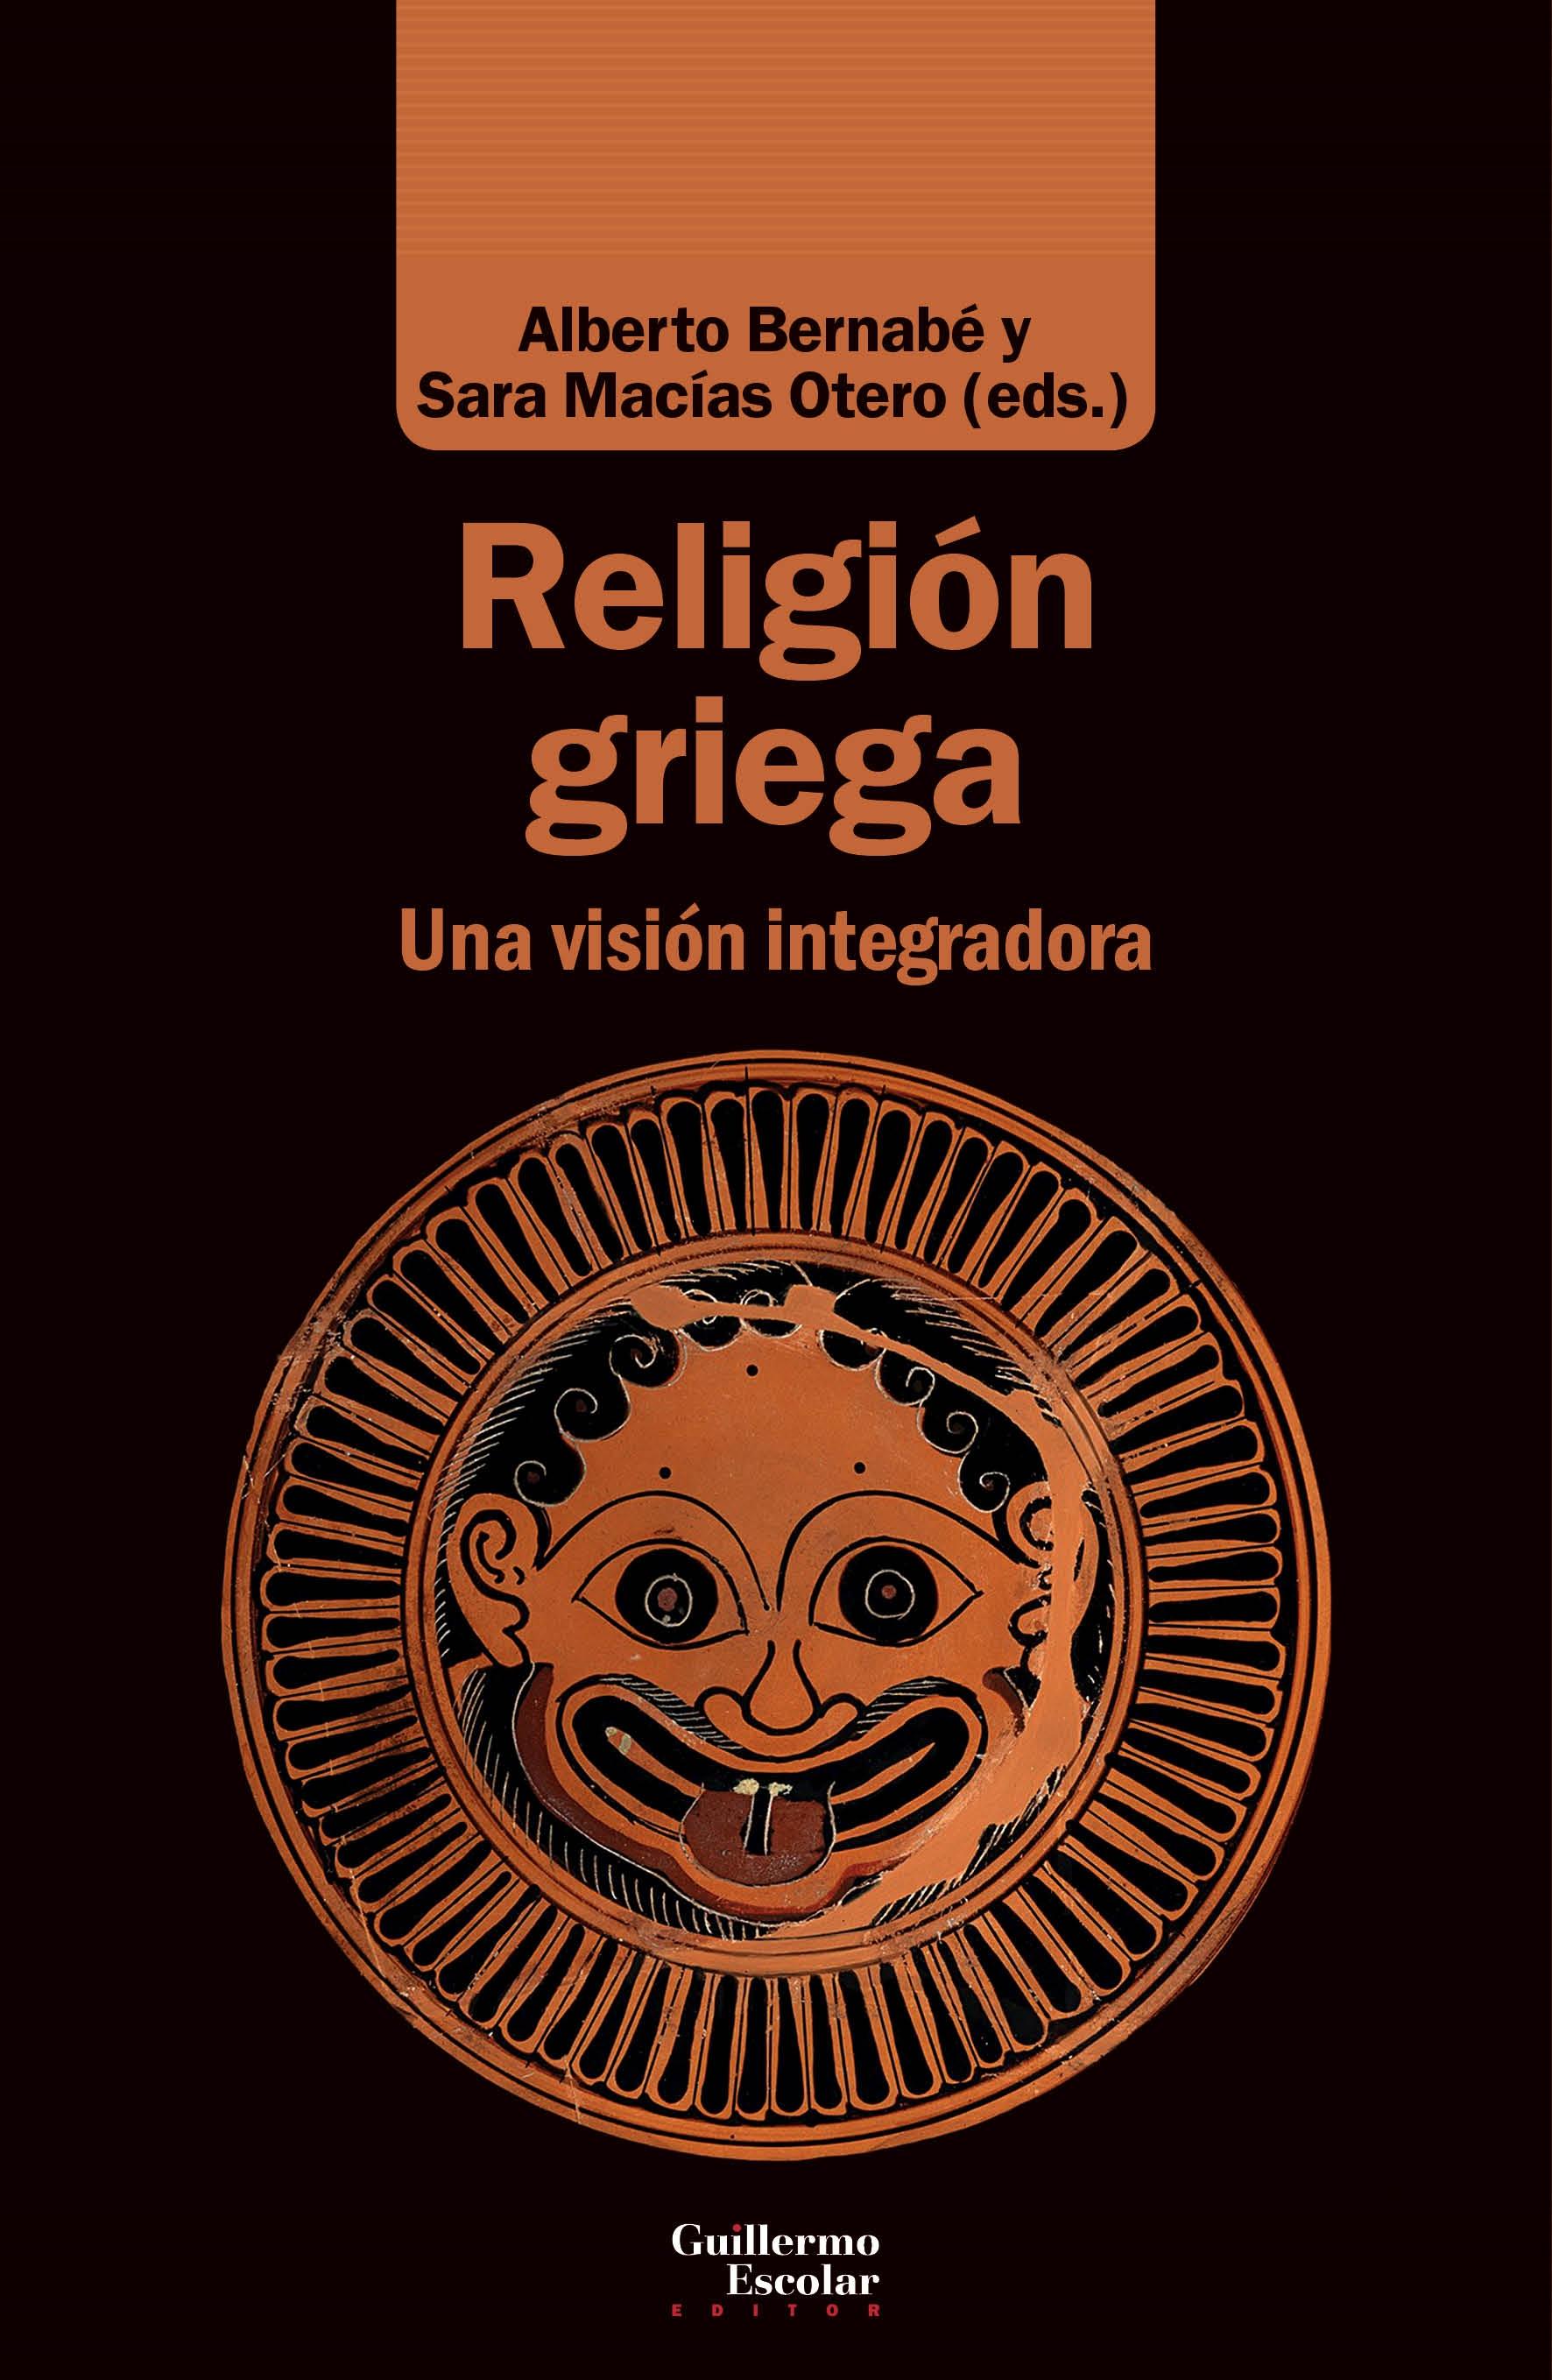 Religión griega "Una visión integradora". 